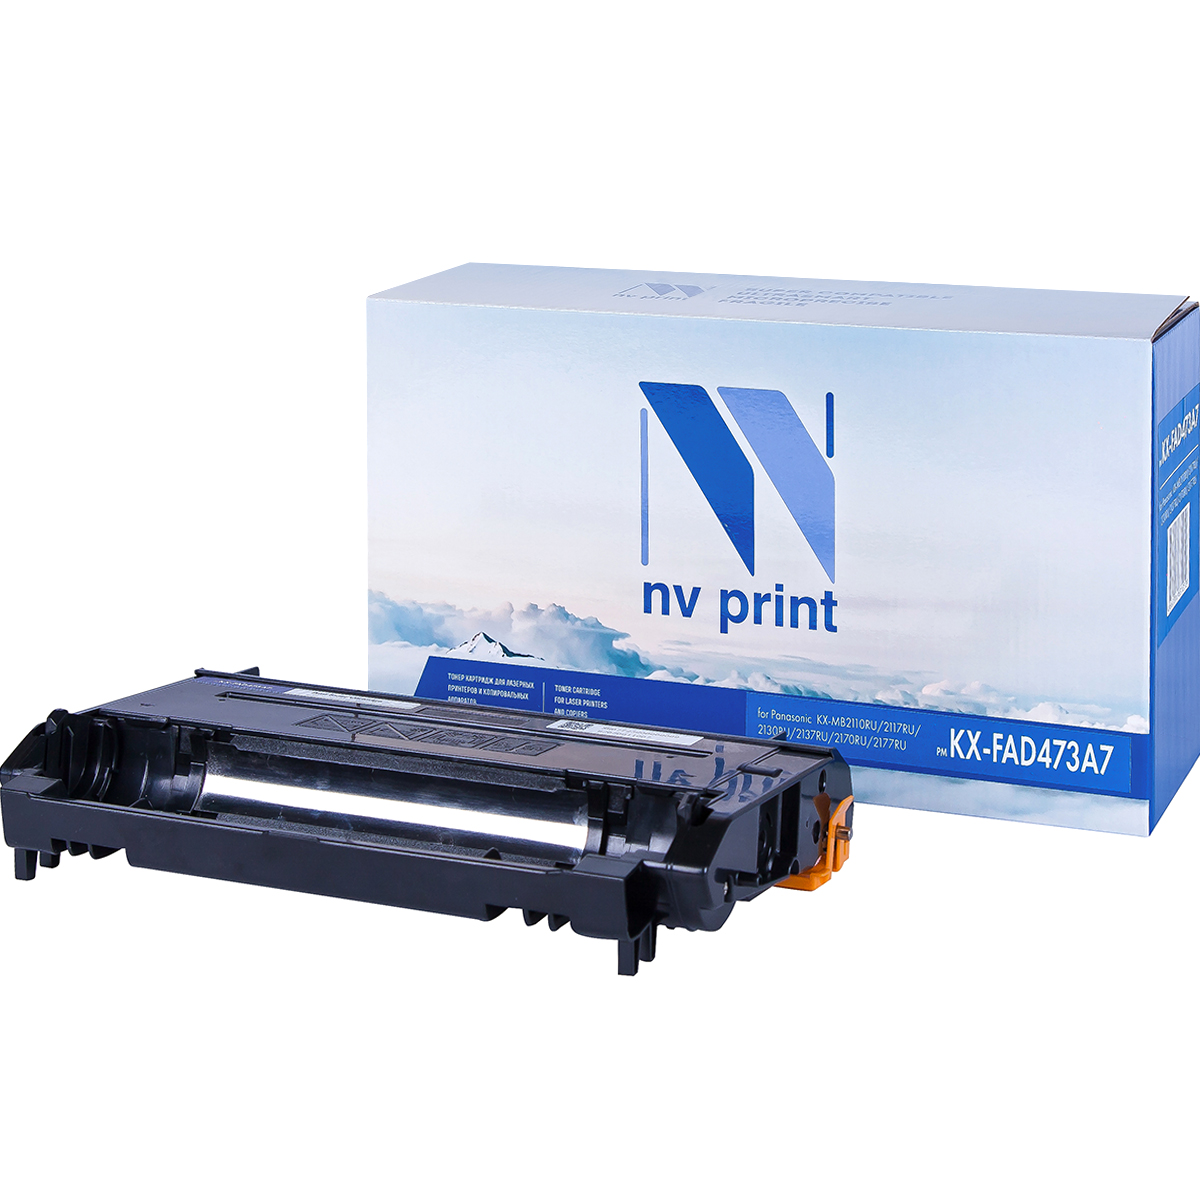   NV-Print  Panasonic KX-MB2110RU/2130RU/2170RU, KX-FAD473A7   